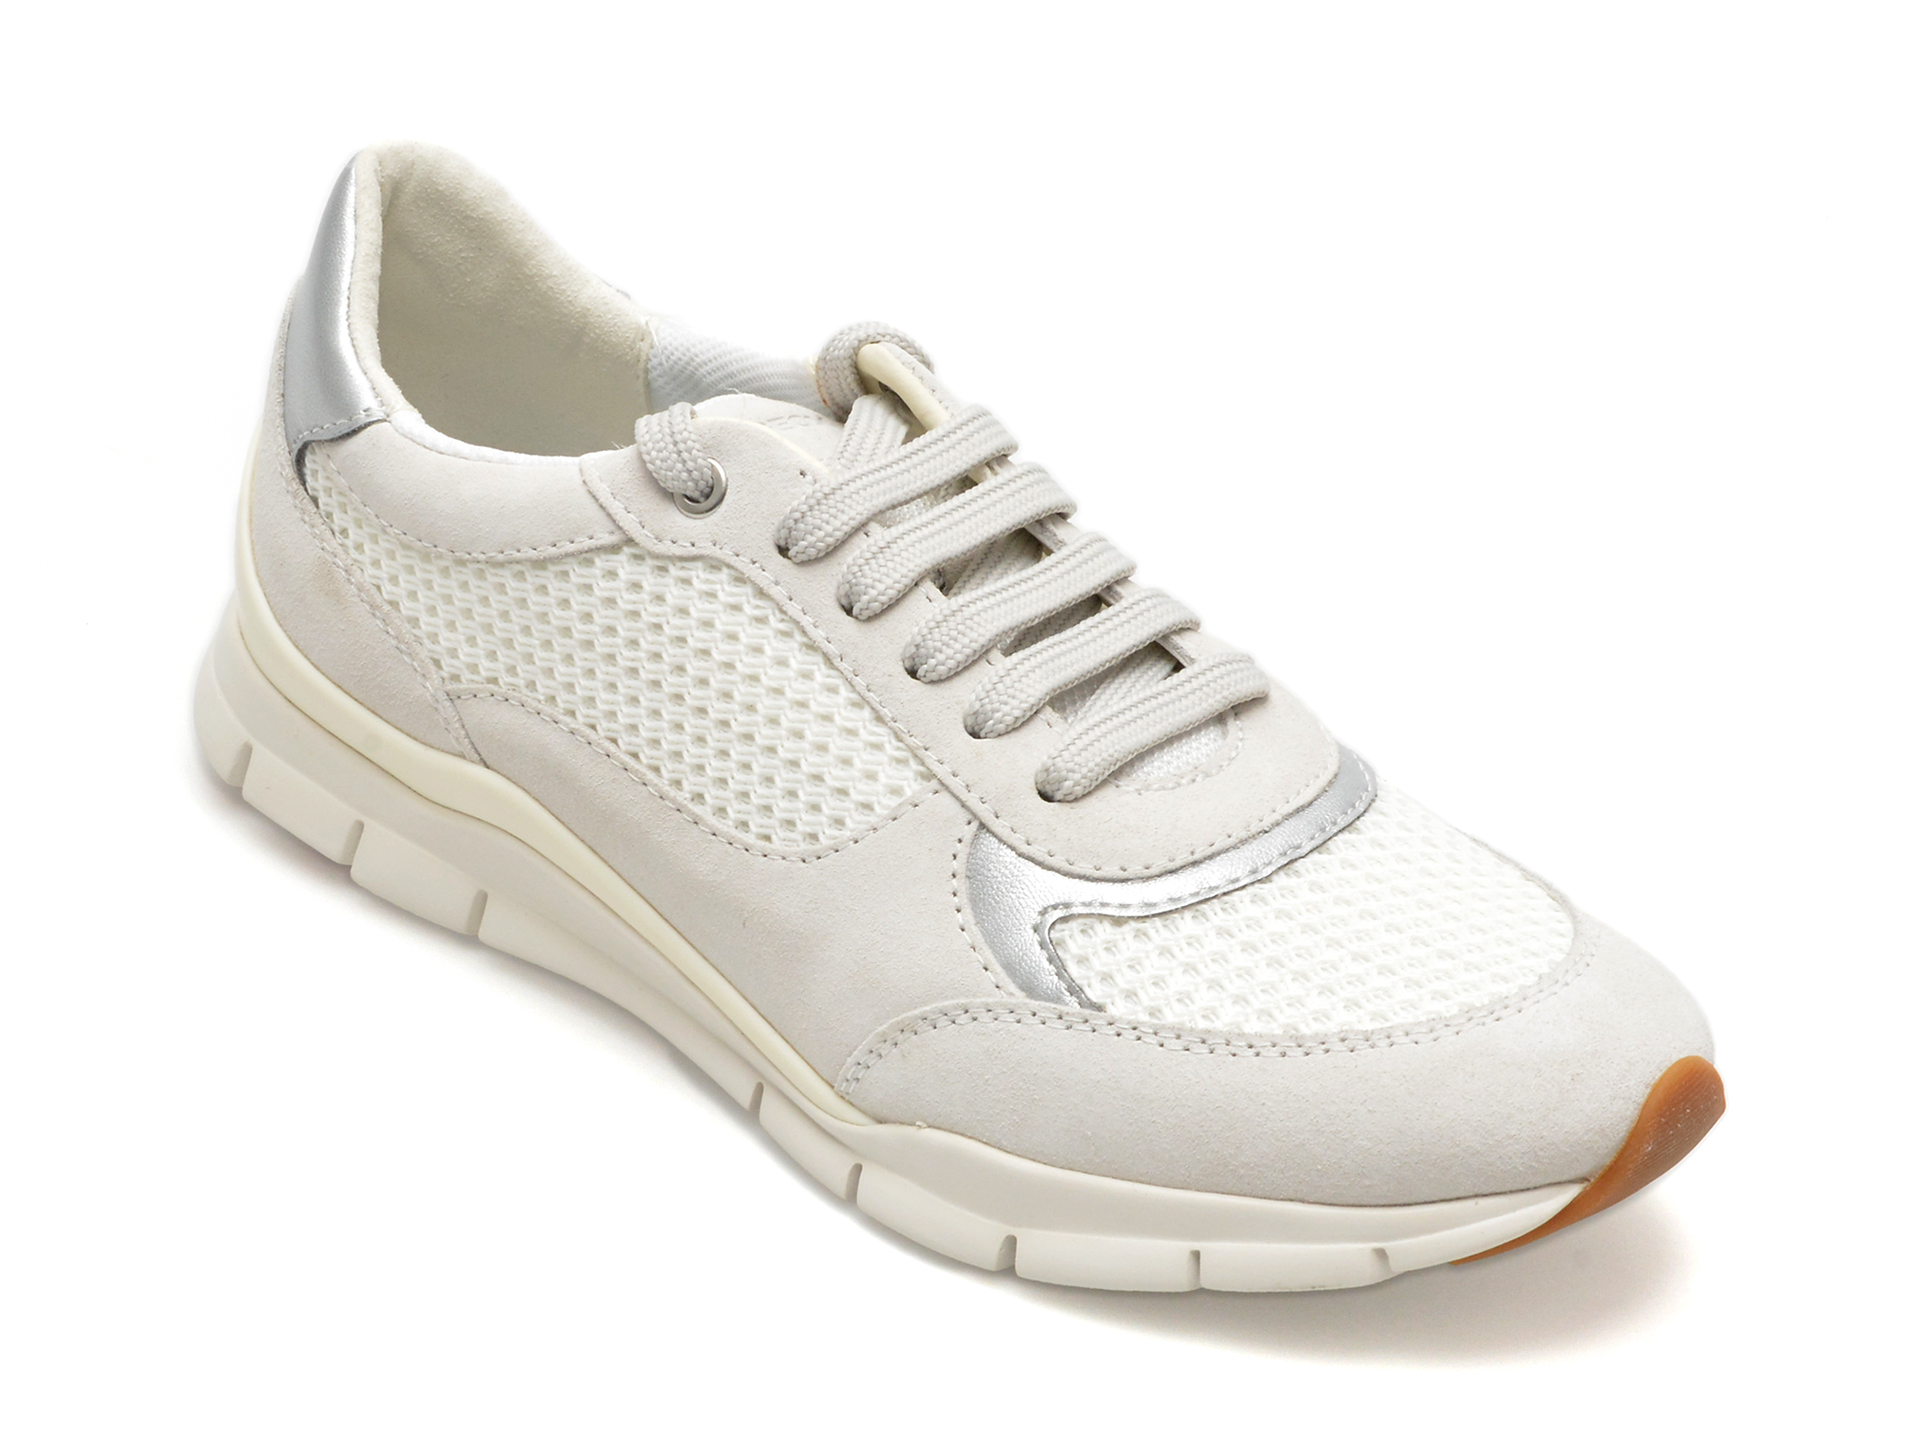 Pantofi GEOX albi, D35F2A, din piele intoarsa